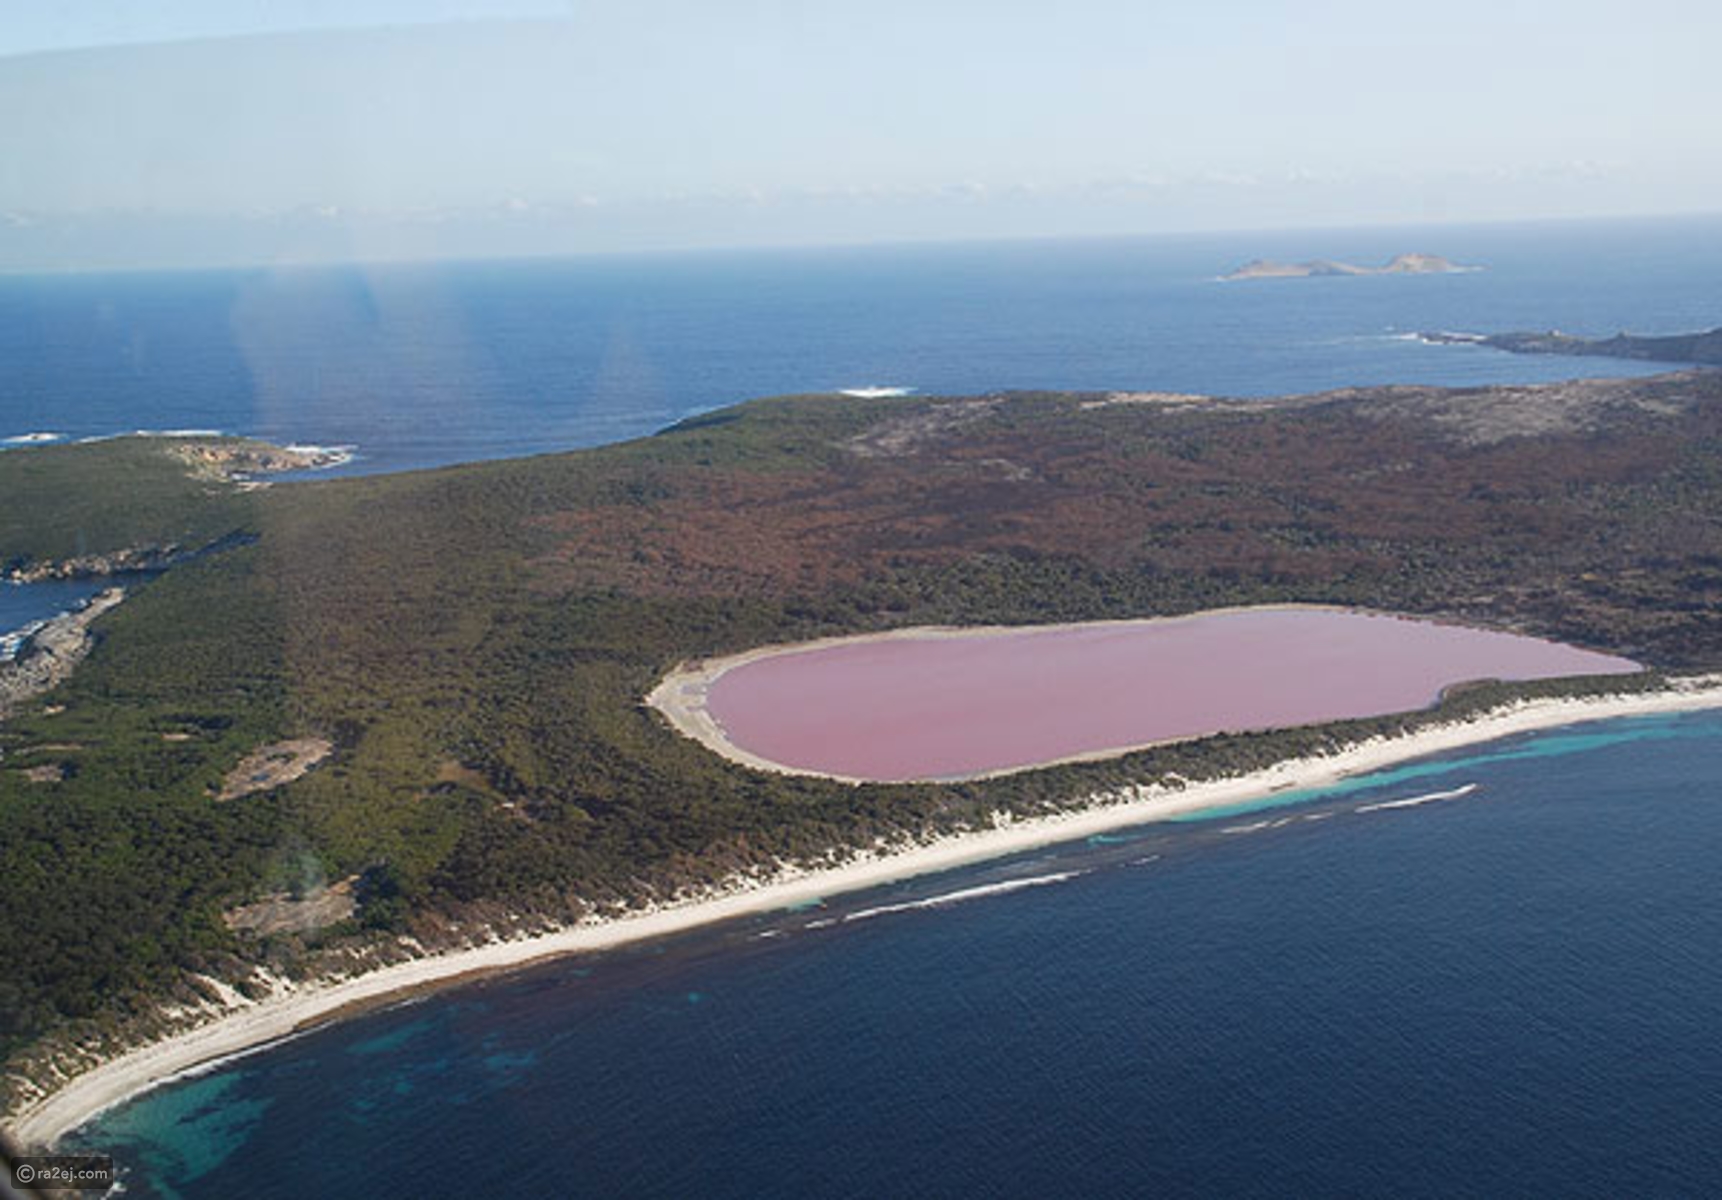 بحيرة هيلير أو البحيرة الوردية في غرب أستراليا 39deec10534585c9743076c1f98425254688feb1-041016125312.jpg?preset=v3